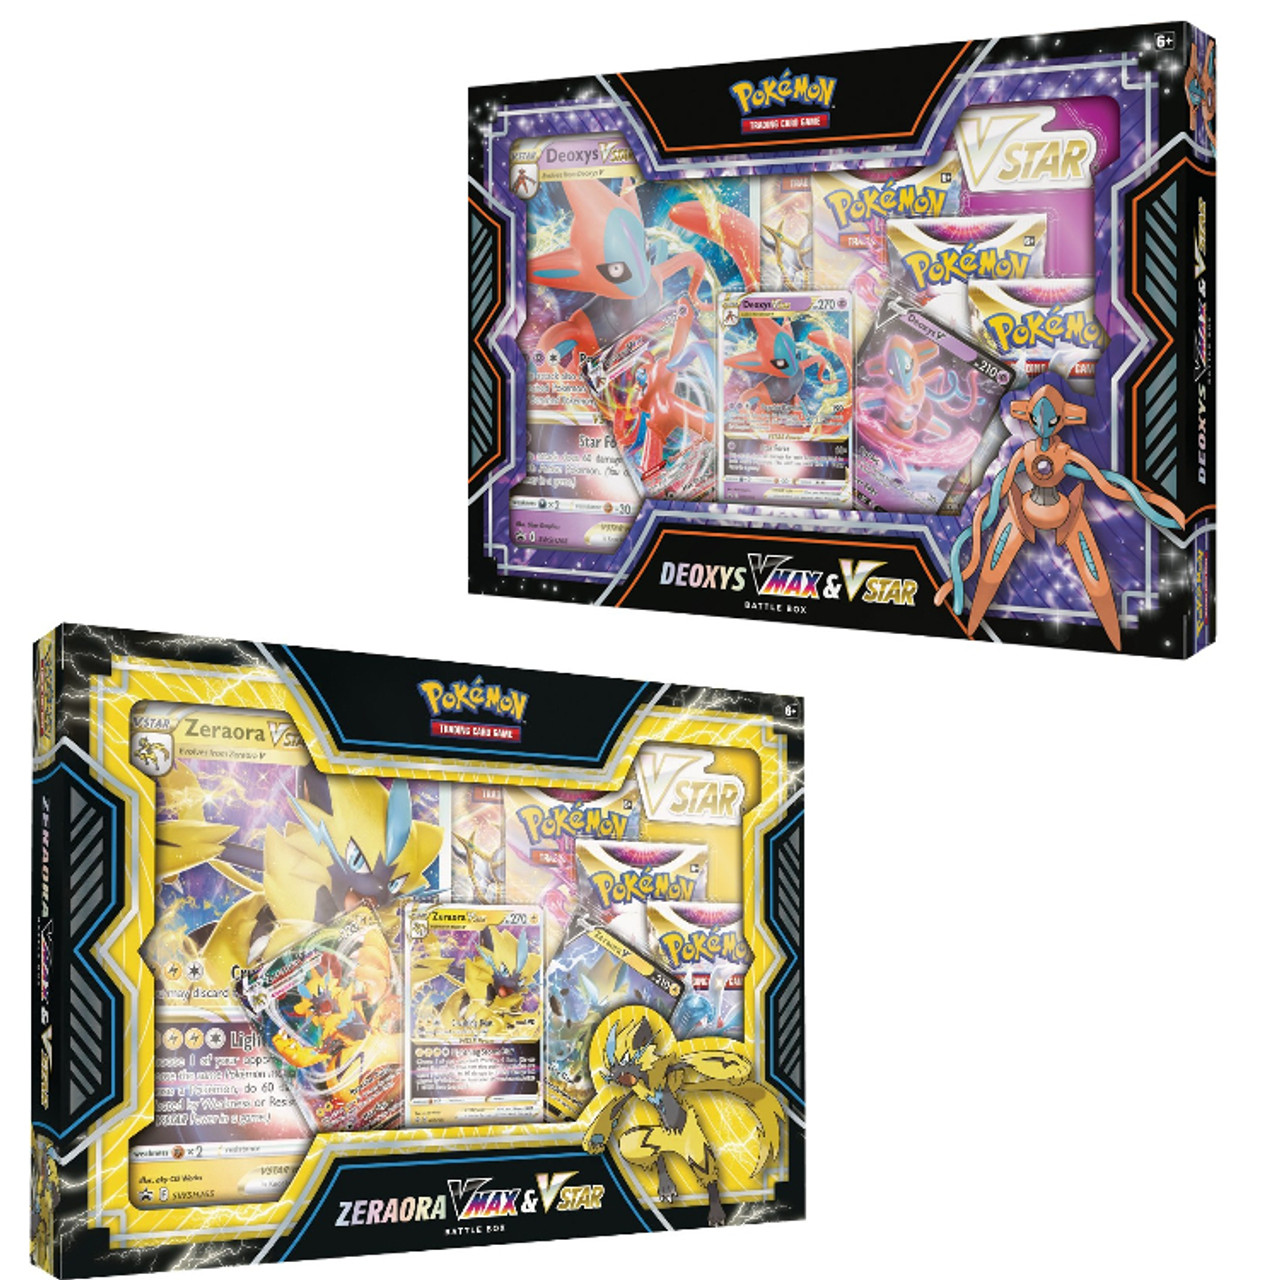 Pokemon Zeraora VMAX & VSTAR Battle Box (1st)